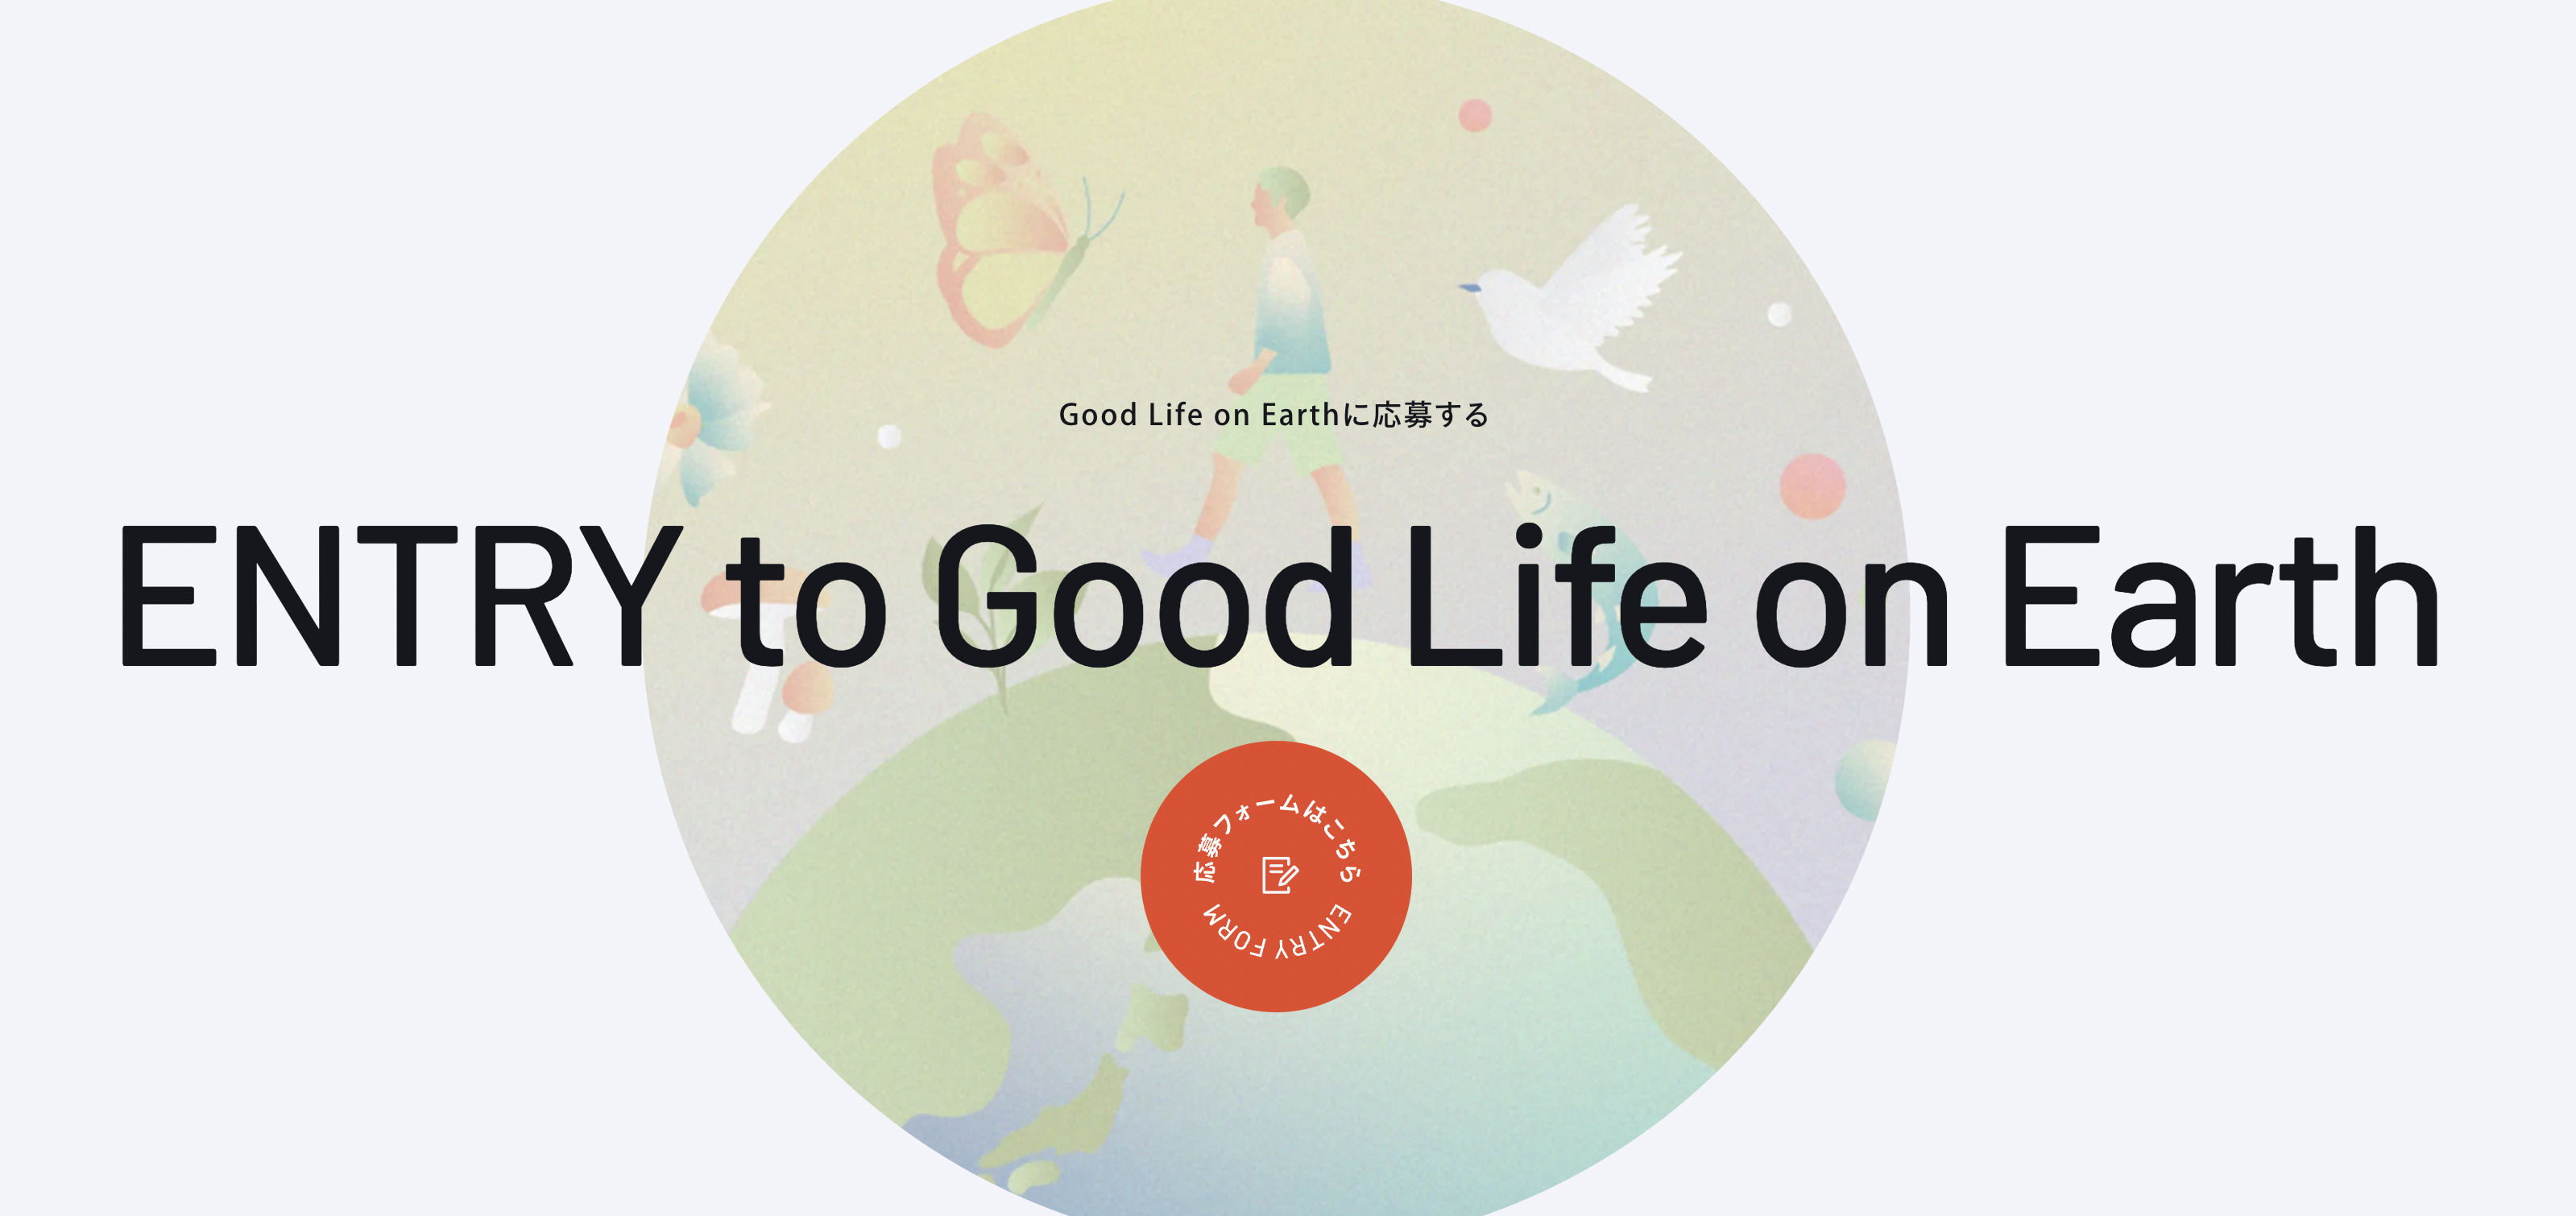 トヨタ・モビリティ基金と東京大学OEGsによる新たな形のアイデア実現支援プログラム 「Good Life on Earth ～すべての生命が共存できる地球のために」